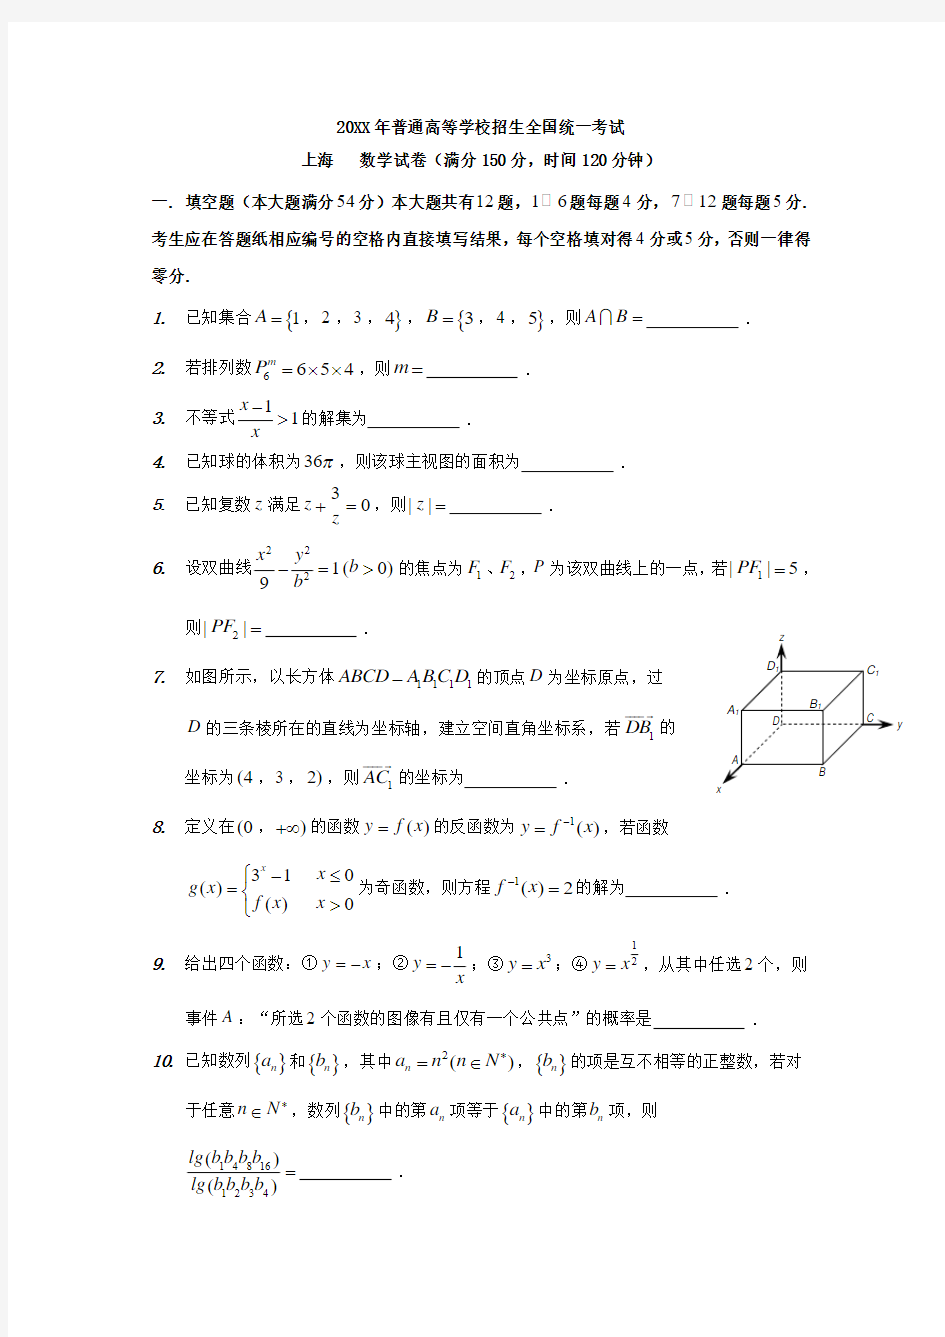 2017年上海高考数学真题